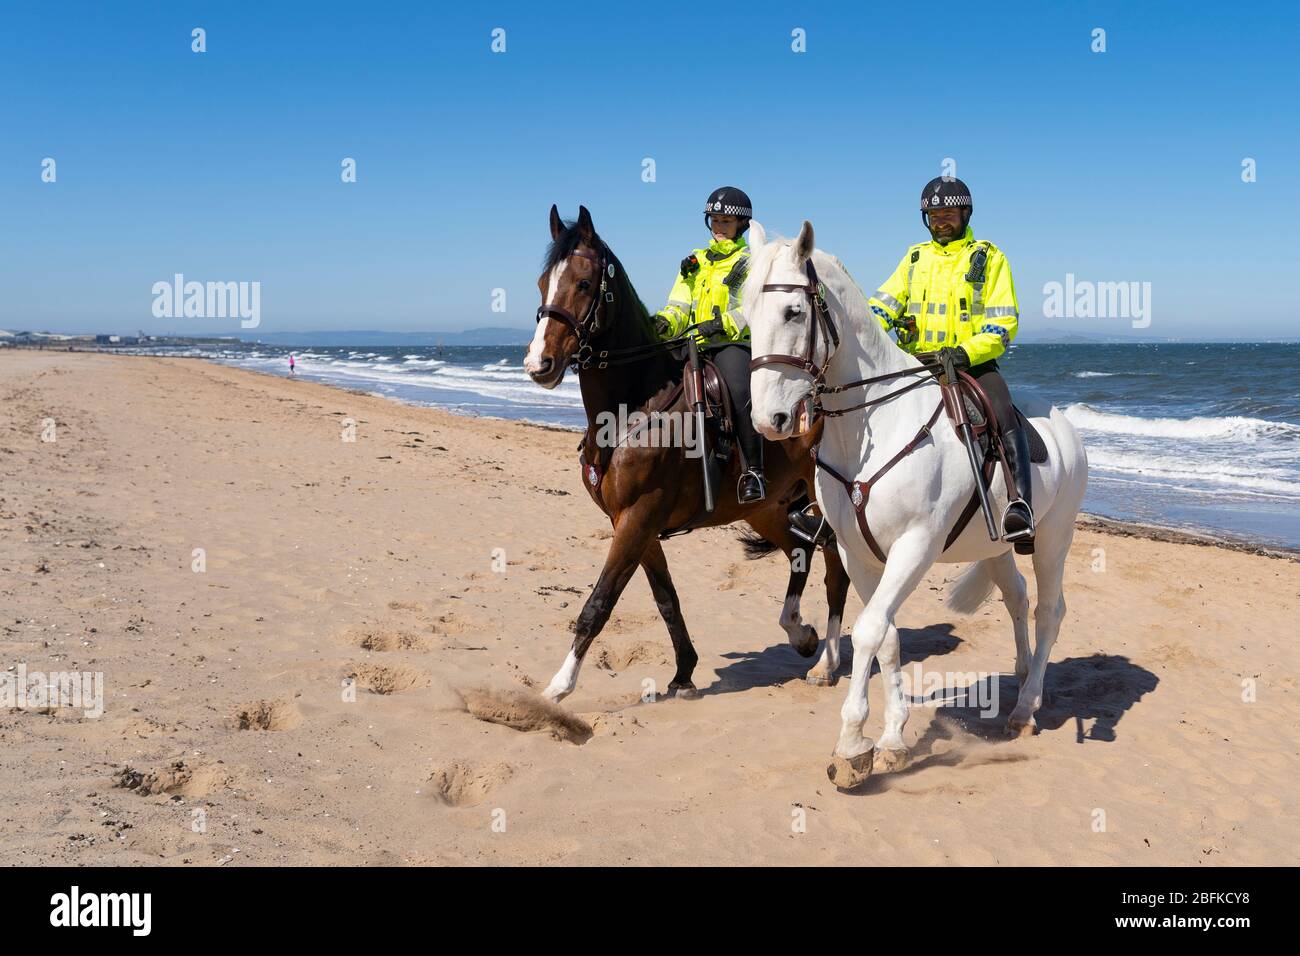 Portobello, Scozia, Regno Unito. 19 aprile 2020. Cavalli di polizia montati Logie e Edimburgo - in bianco, pattugliare la passeggiata e la spiaggia a Portobello la domenica pomeriggio. Iain Masterton/Alamy Live News Foto Stock